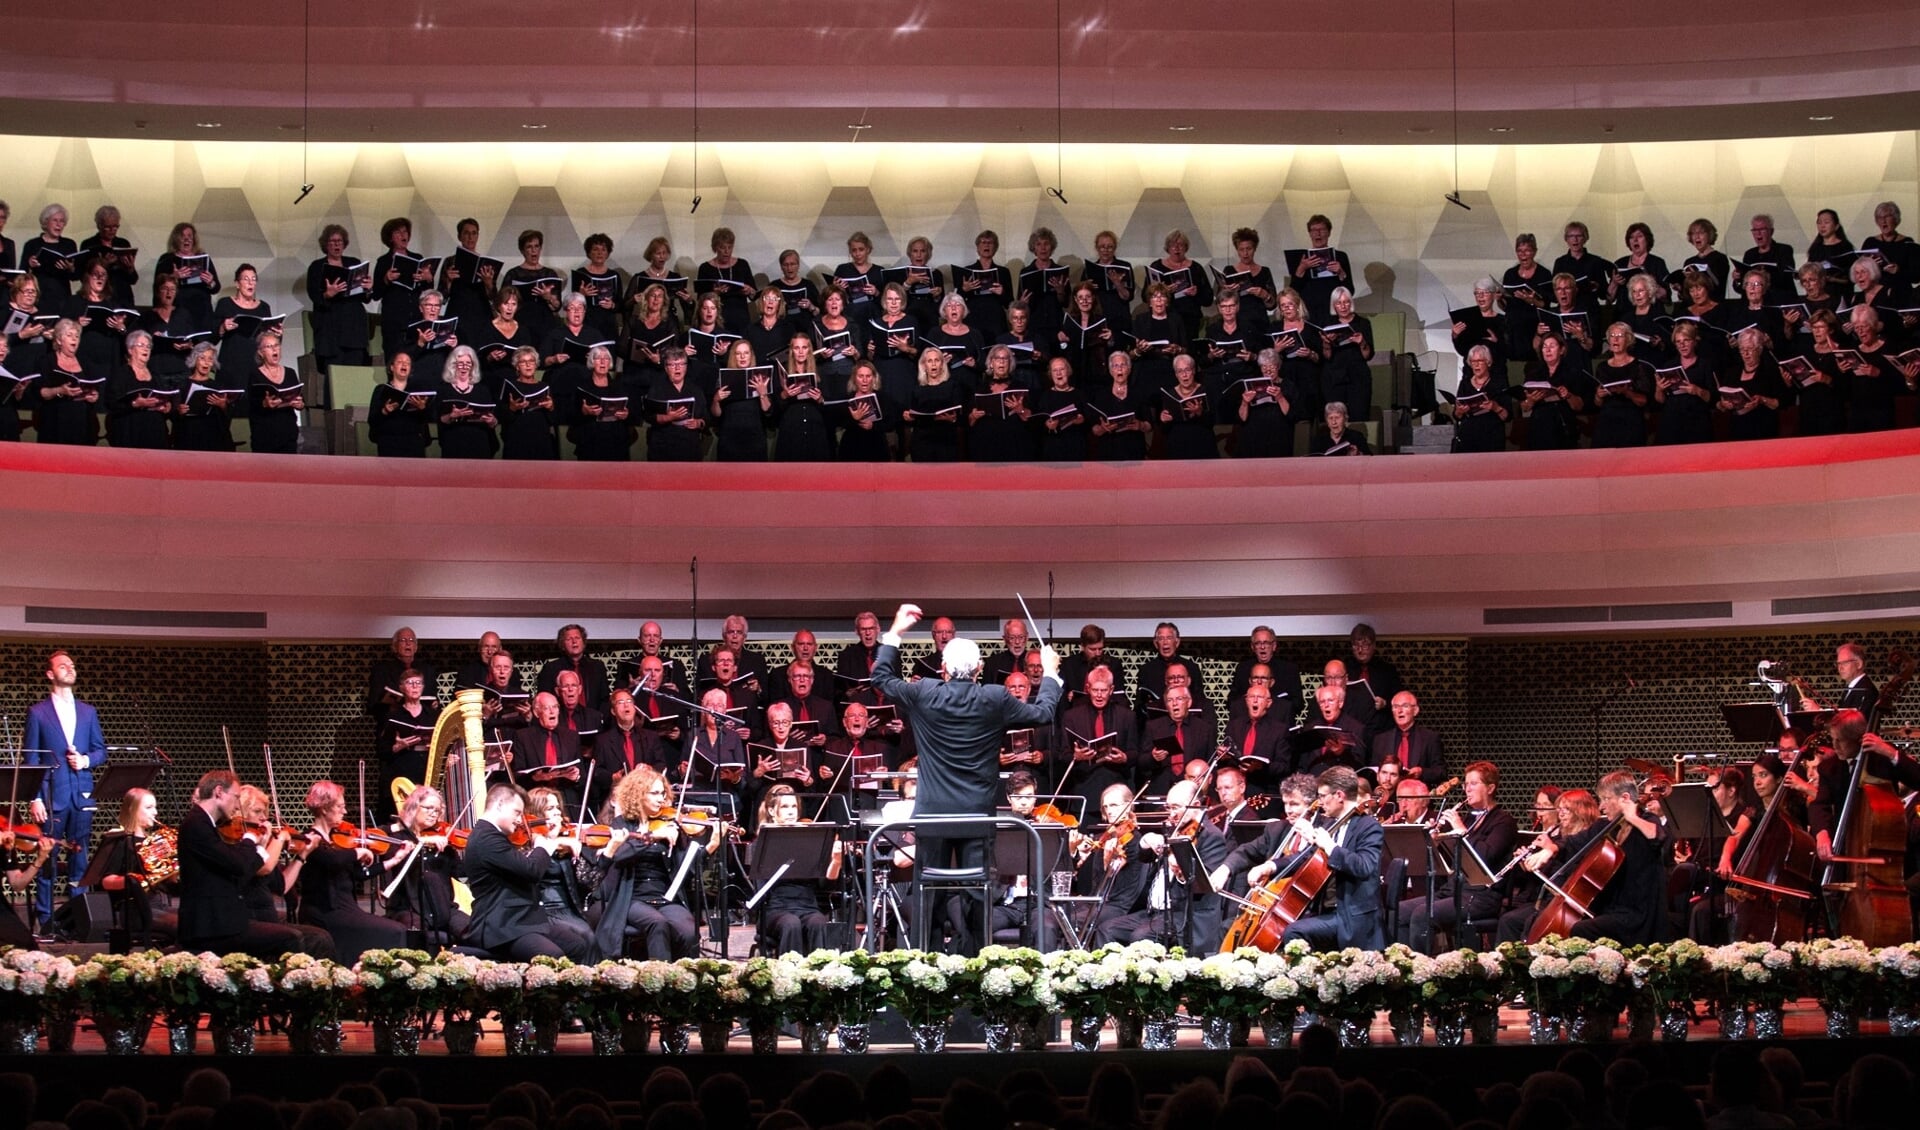 De imposante Jerusalem Passion wordt uitgevoerd door een deel van het JP-koor o.l.v. Hans Matla met daarbij diverse solisten en begeleiders.